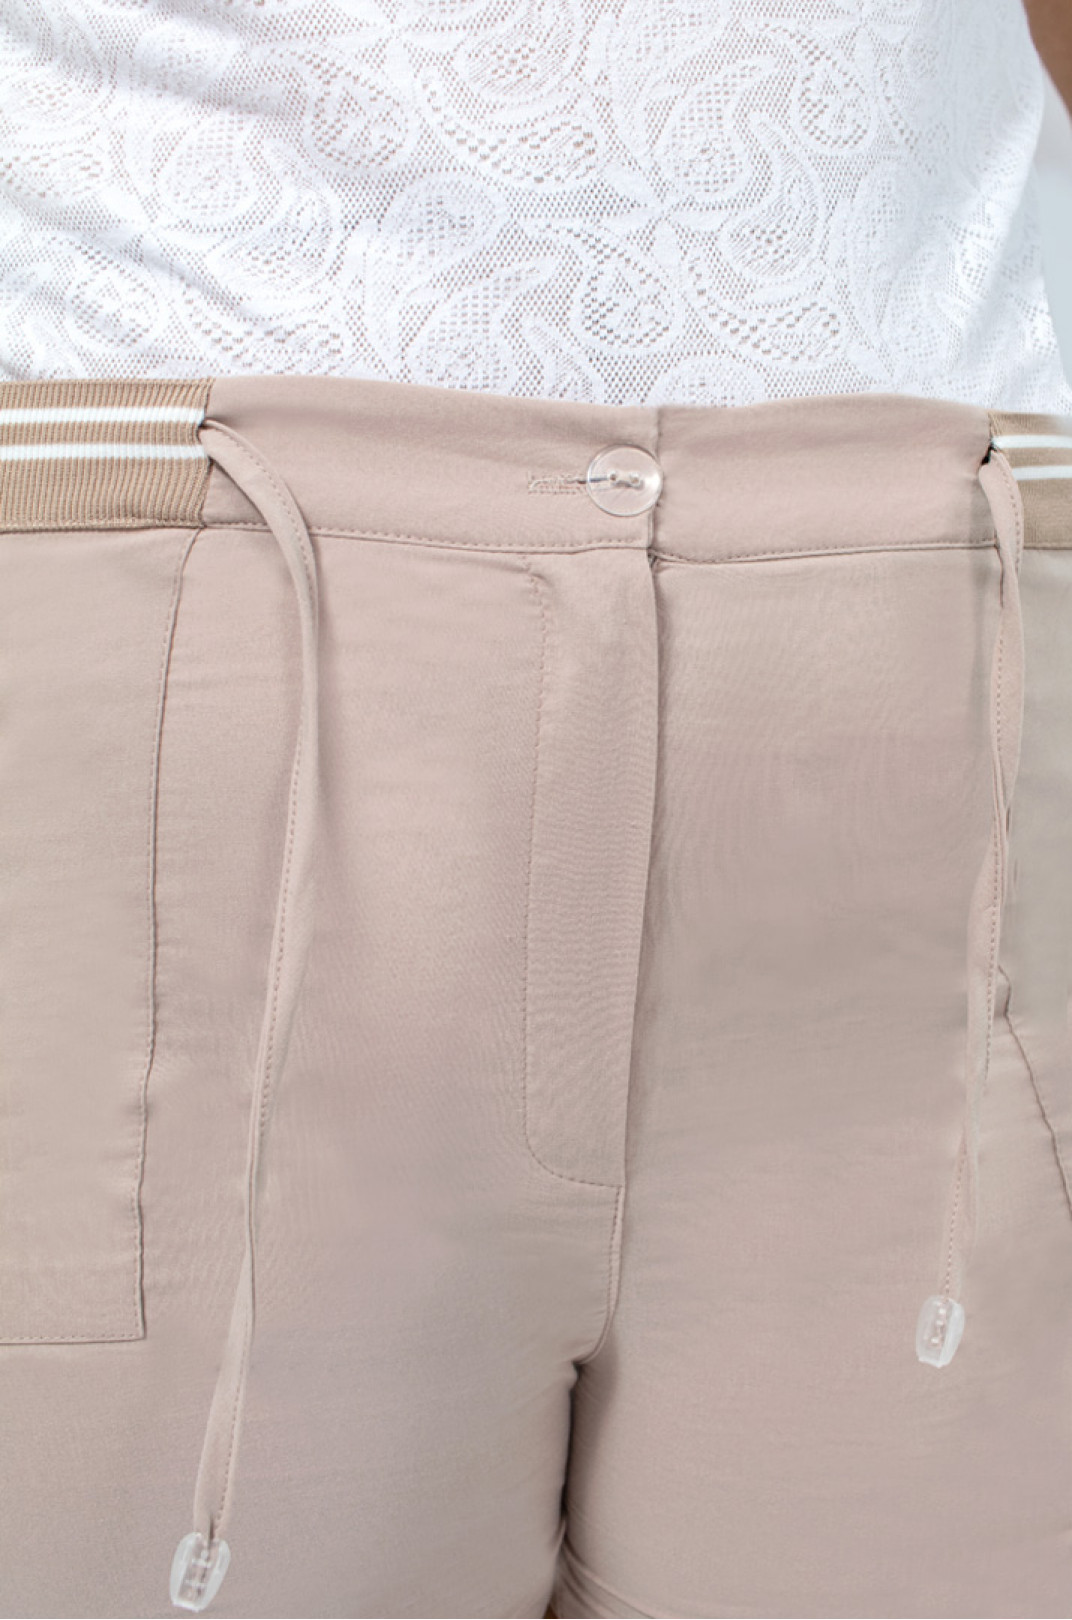 Короткие коттоновые шорты в разных цветах супер батал